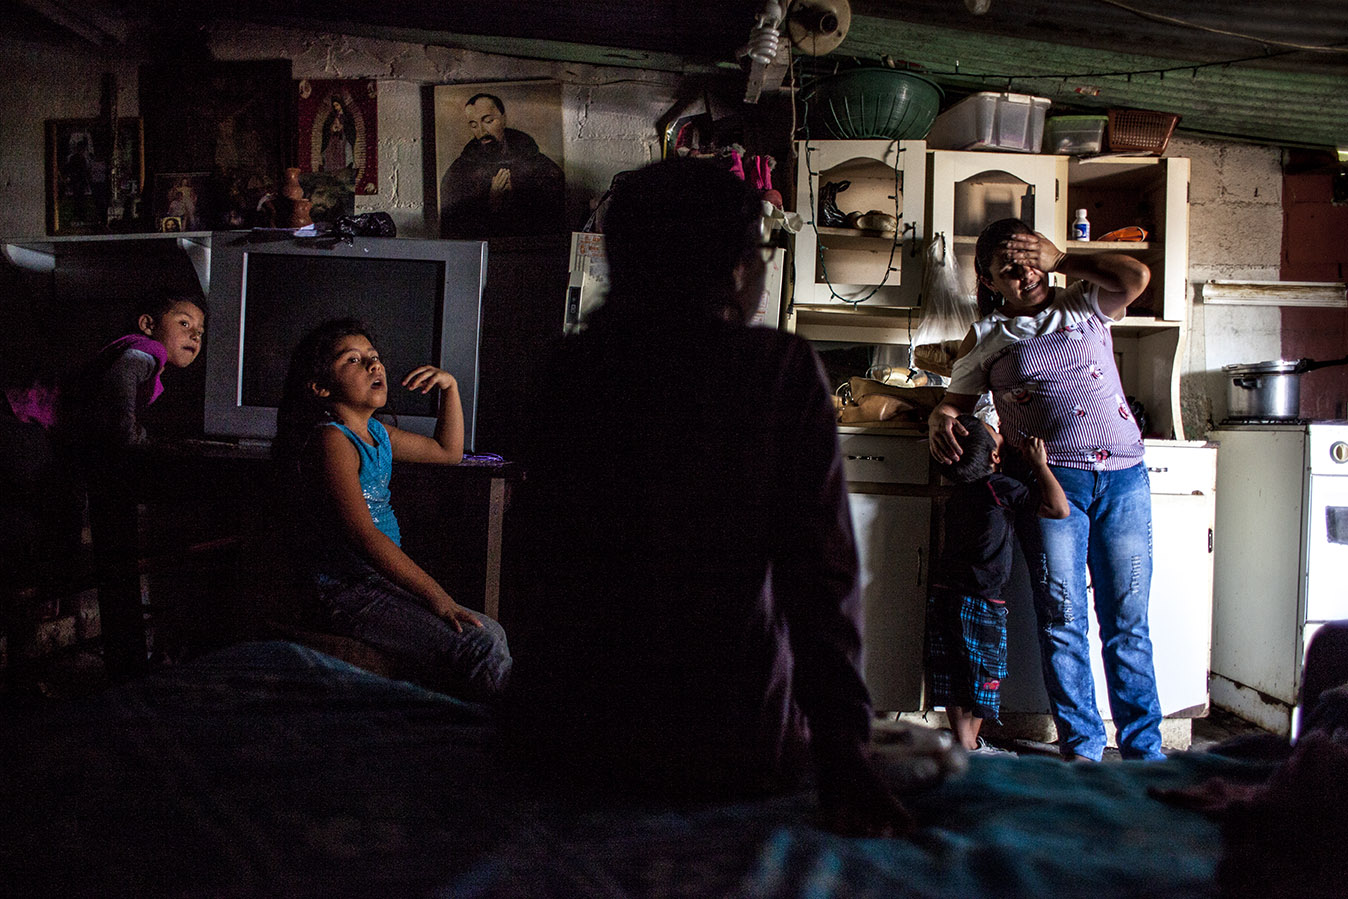 Mayra Morales, madre soltera de 32 años. Está preocupada por el camino que está tomando el mayor de sus 6 hijos, que ya no le presta atención y se está dejando llevar por las malas influencias del barrio. Simone Dalmasso